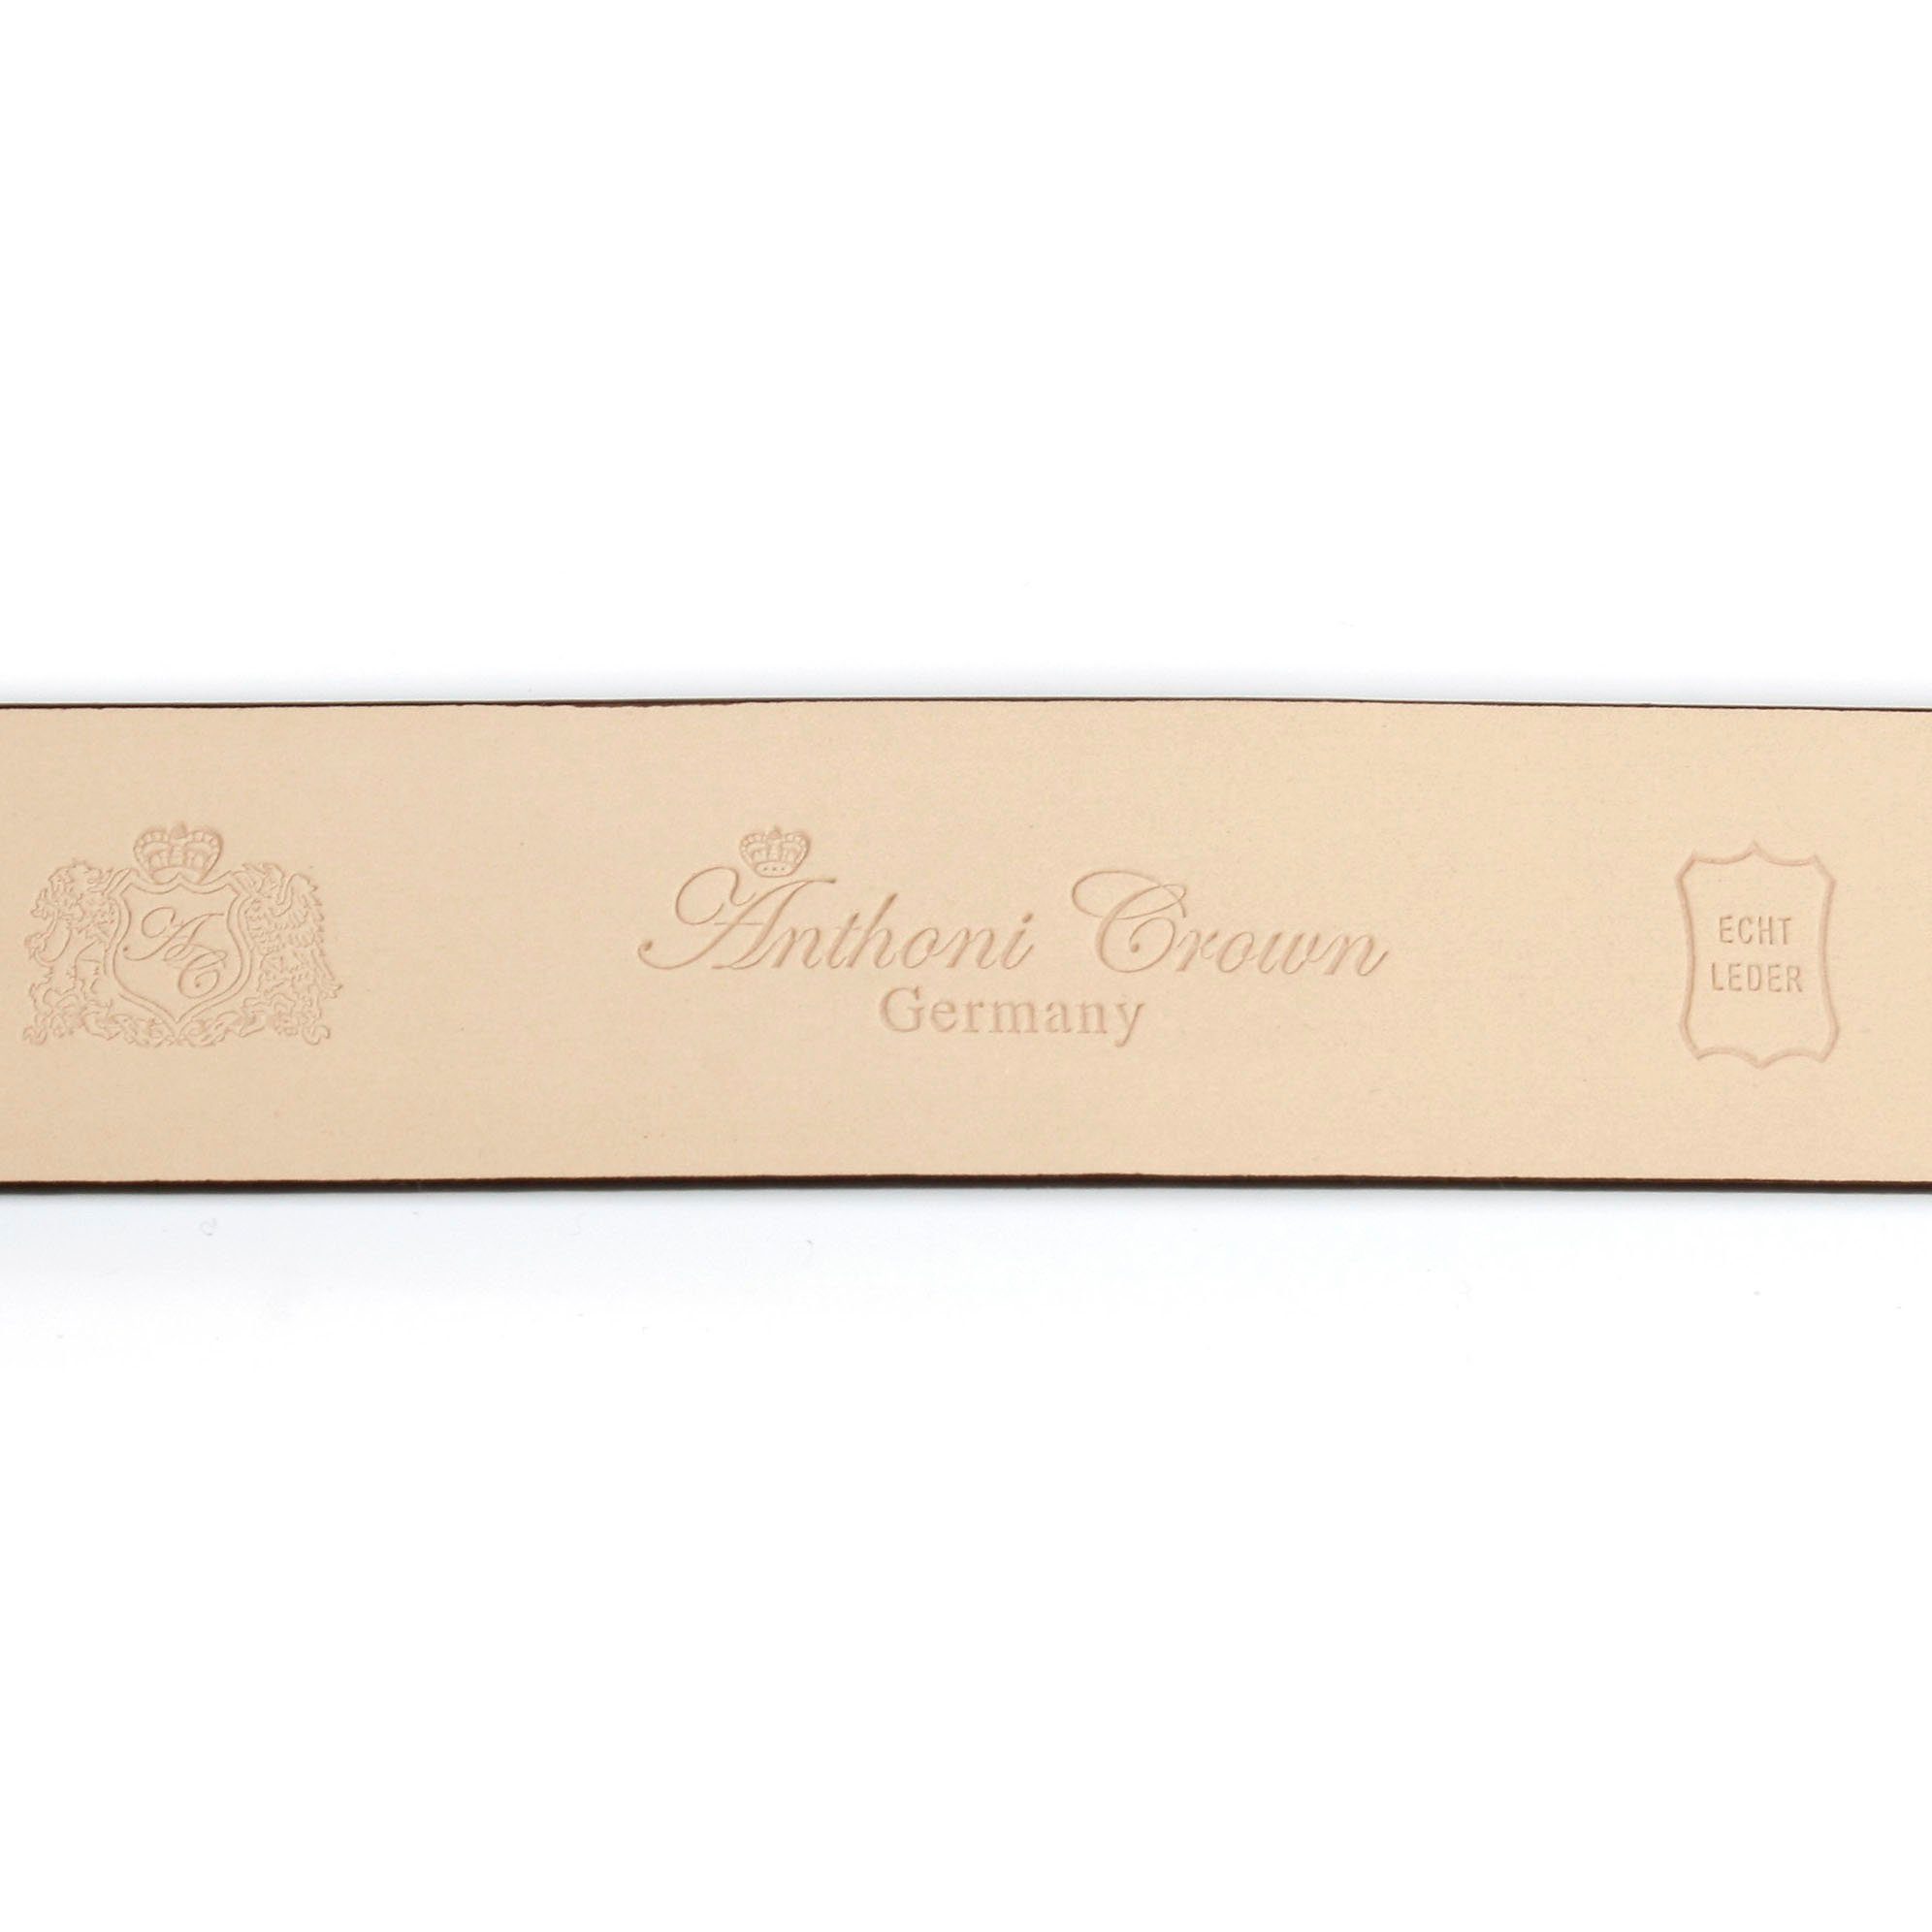 Crown goldfarbener Ledergürtel Koppel-Schließe filigraner grau mit Anthoni